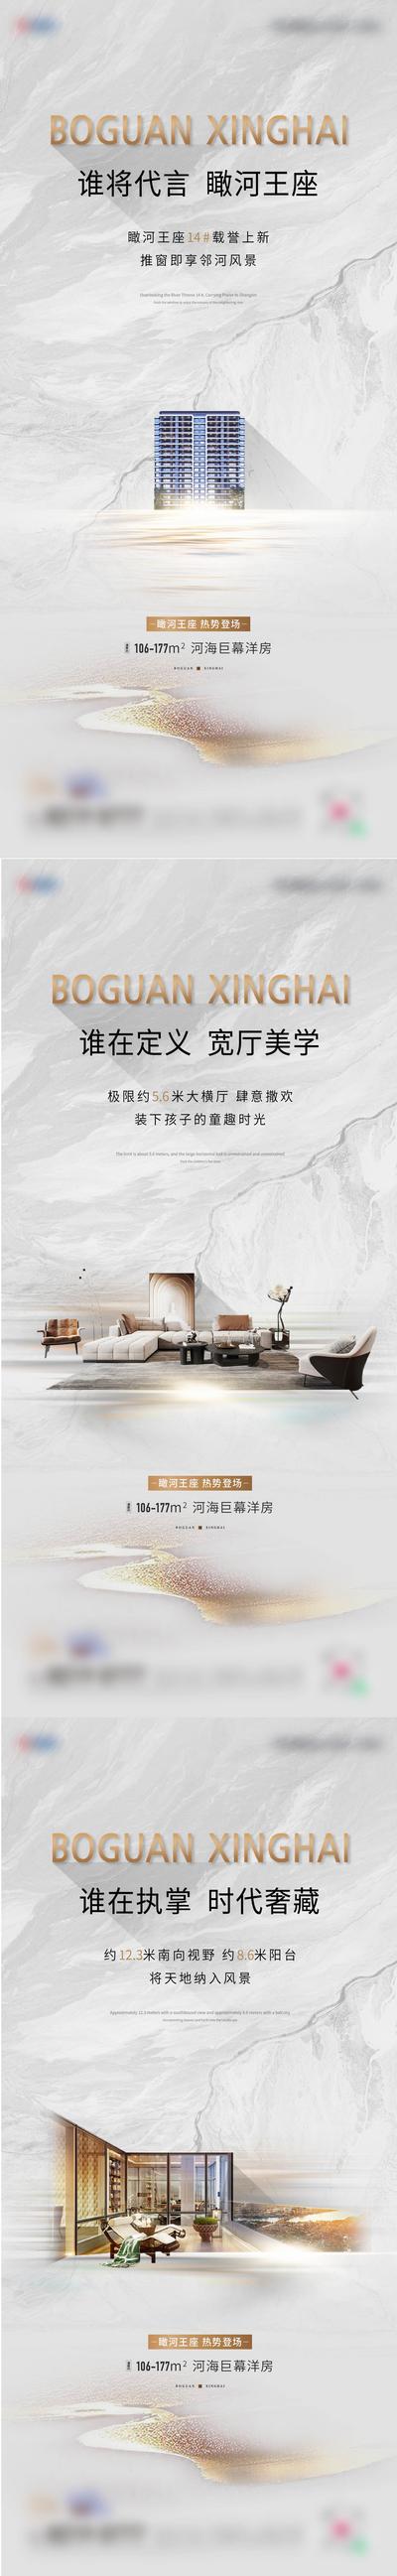 南门网 广告 地产 系列 刷屏 灰色 白色 加推 客厅 阳台 人文 美学 艺术 系列